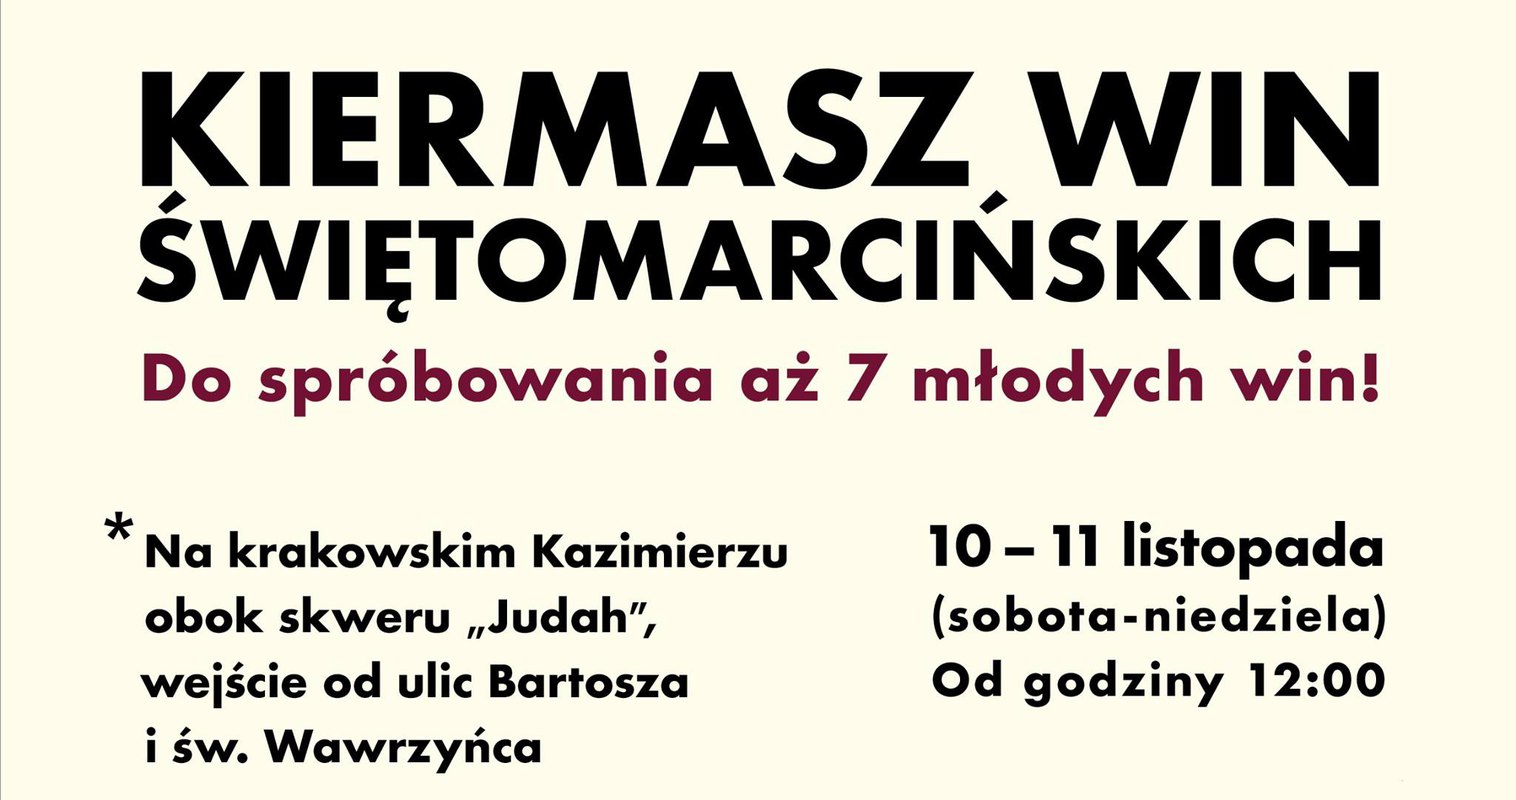 Kiermasz Win Świętomarcińskich - 7 młodych win małopolskich